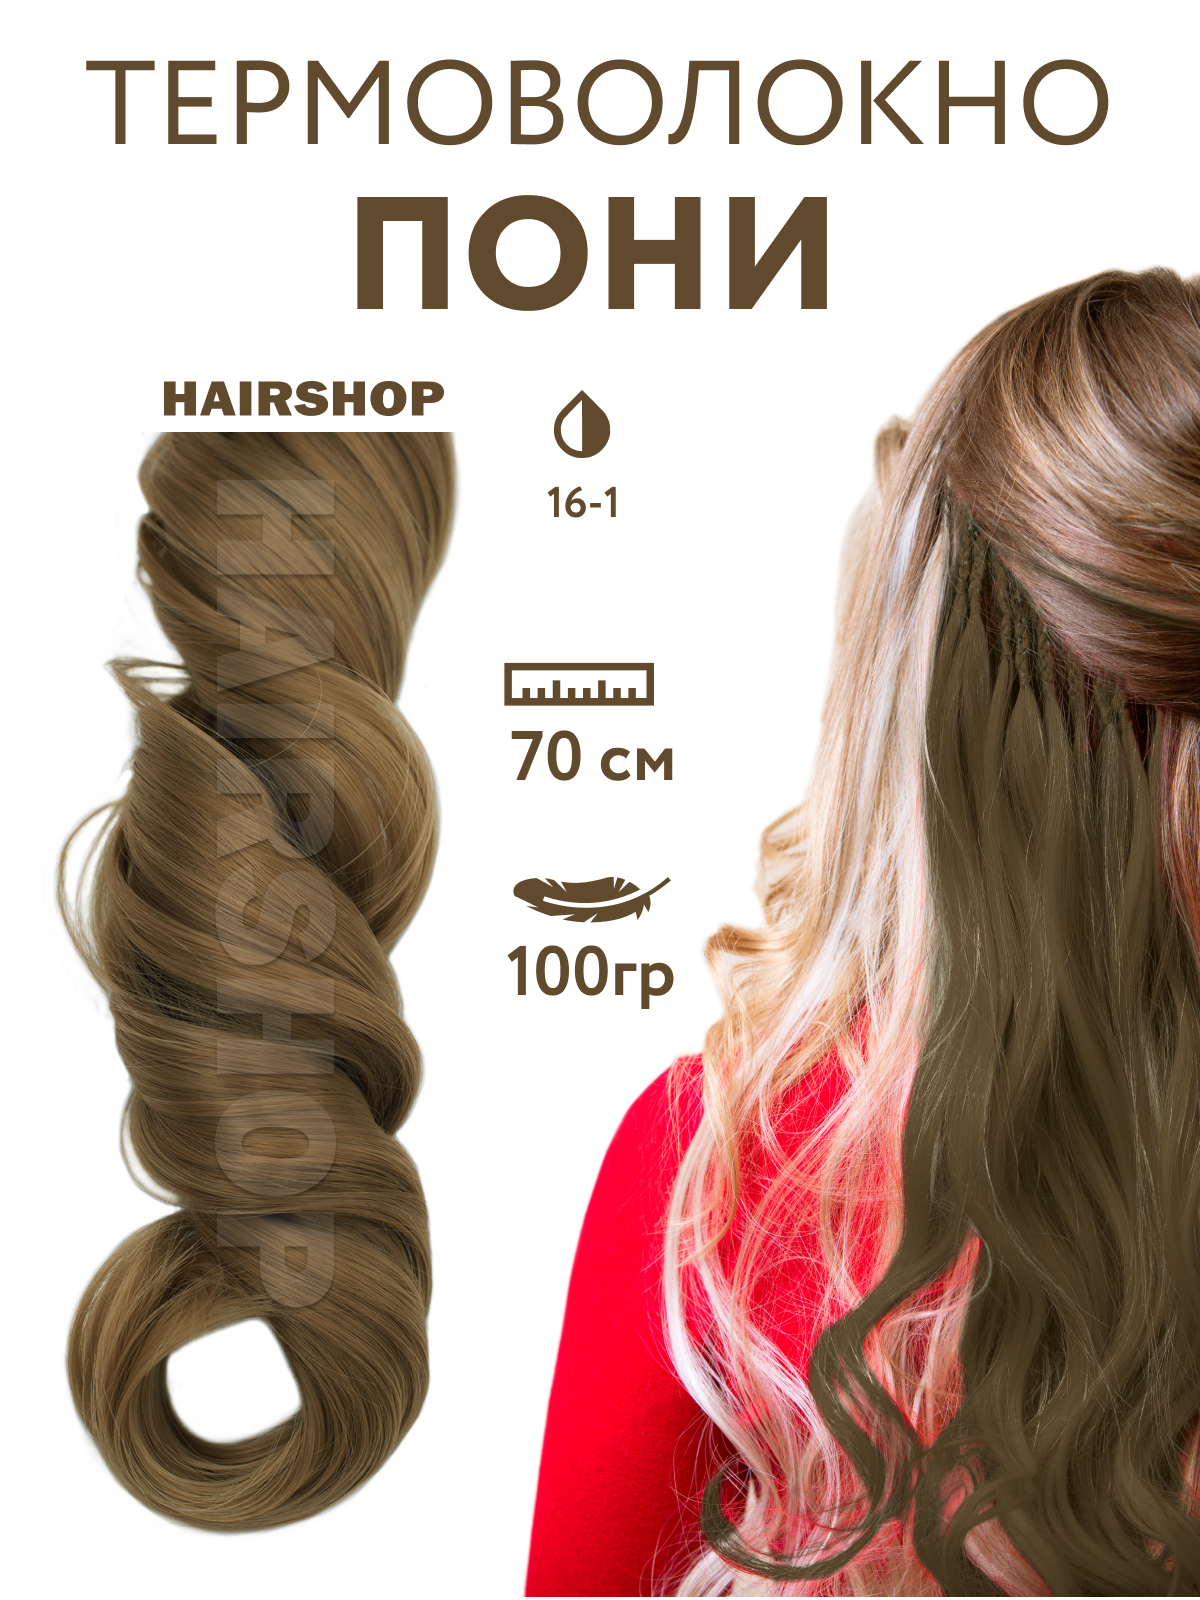 Канекалон Hairshop Пони HairUp для точечного афронаращивания 16-1 Пепельно-русый 1,4м милый пони